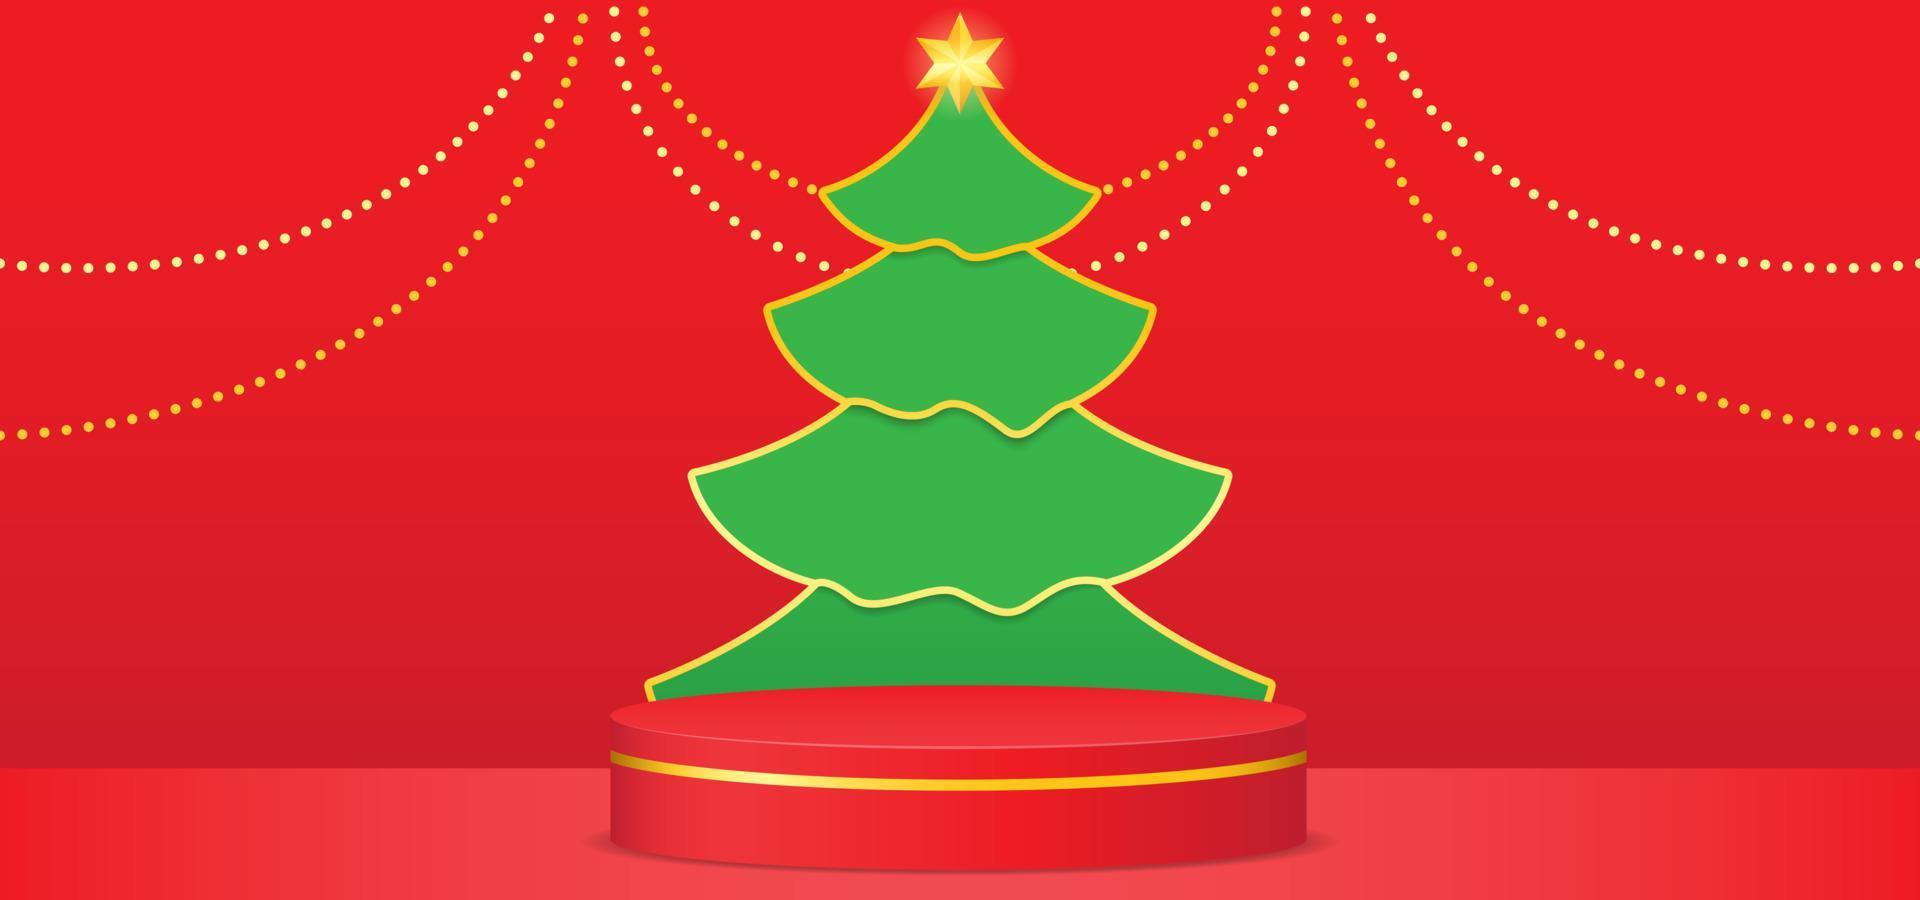 árvore de Natal com pódio vermelho e enfeites de bola de ouro. fundo do vetor com estilo recortado